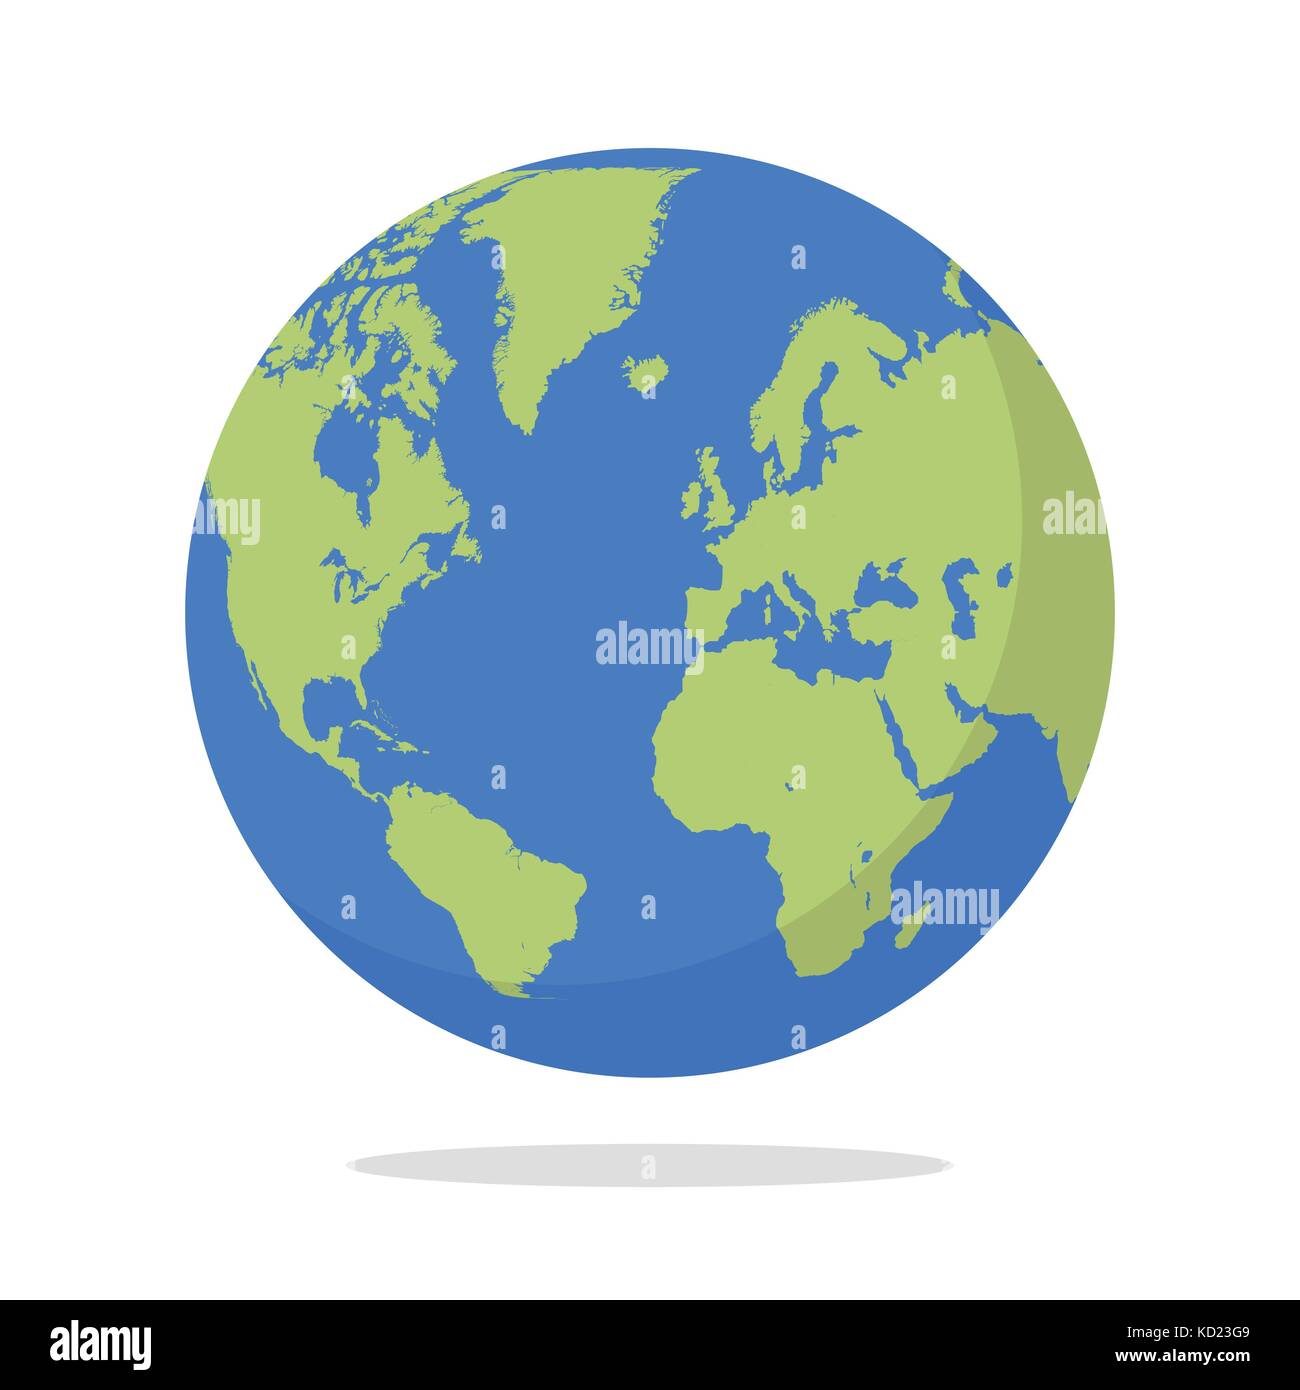 Earth globe on white background. Vector illustration Stock Vector